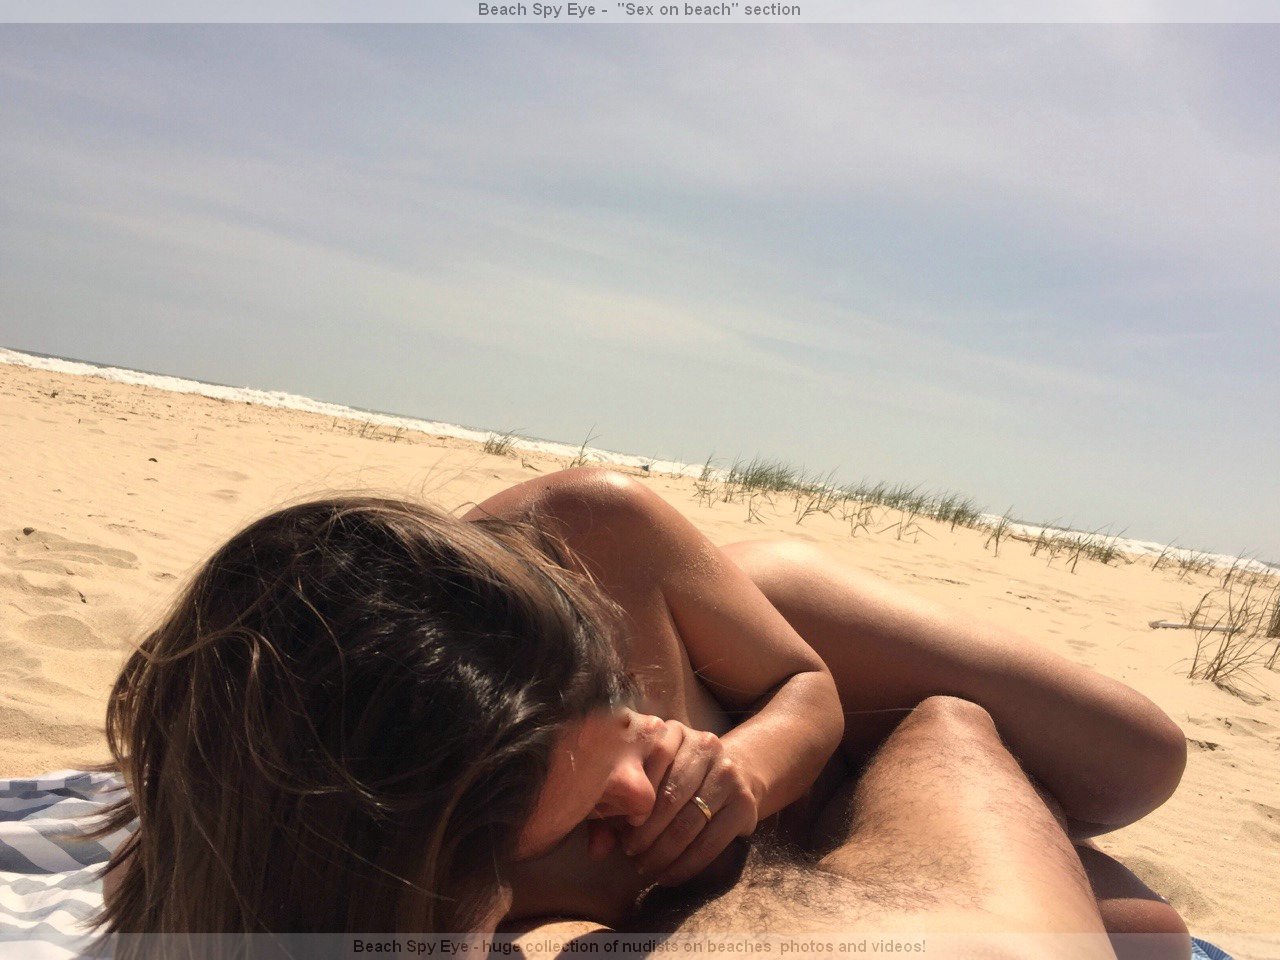 https://pbs.bulkjerk.com/39/3926/pictures/4009-1-voyeur-beach-sex.jpg